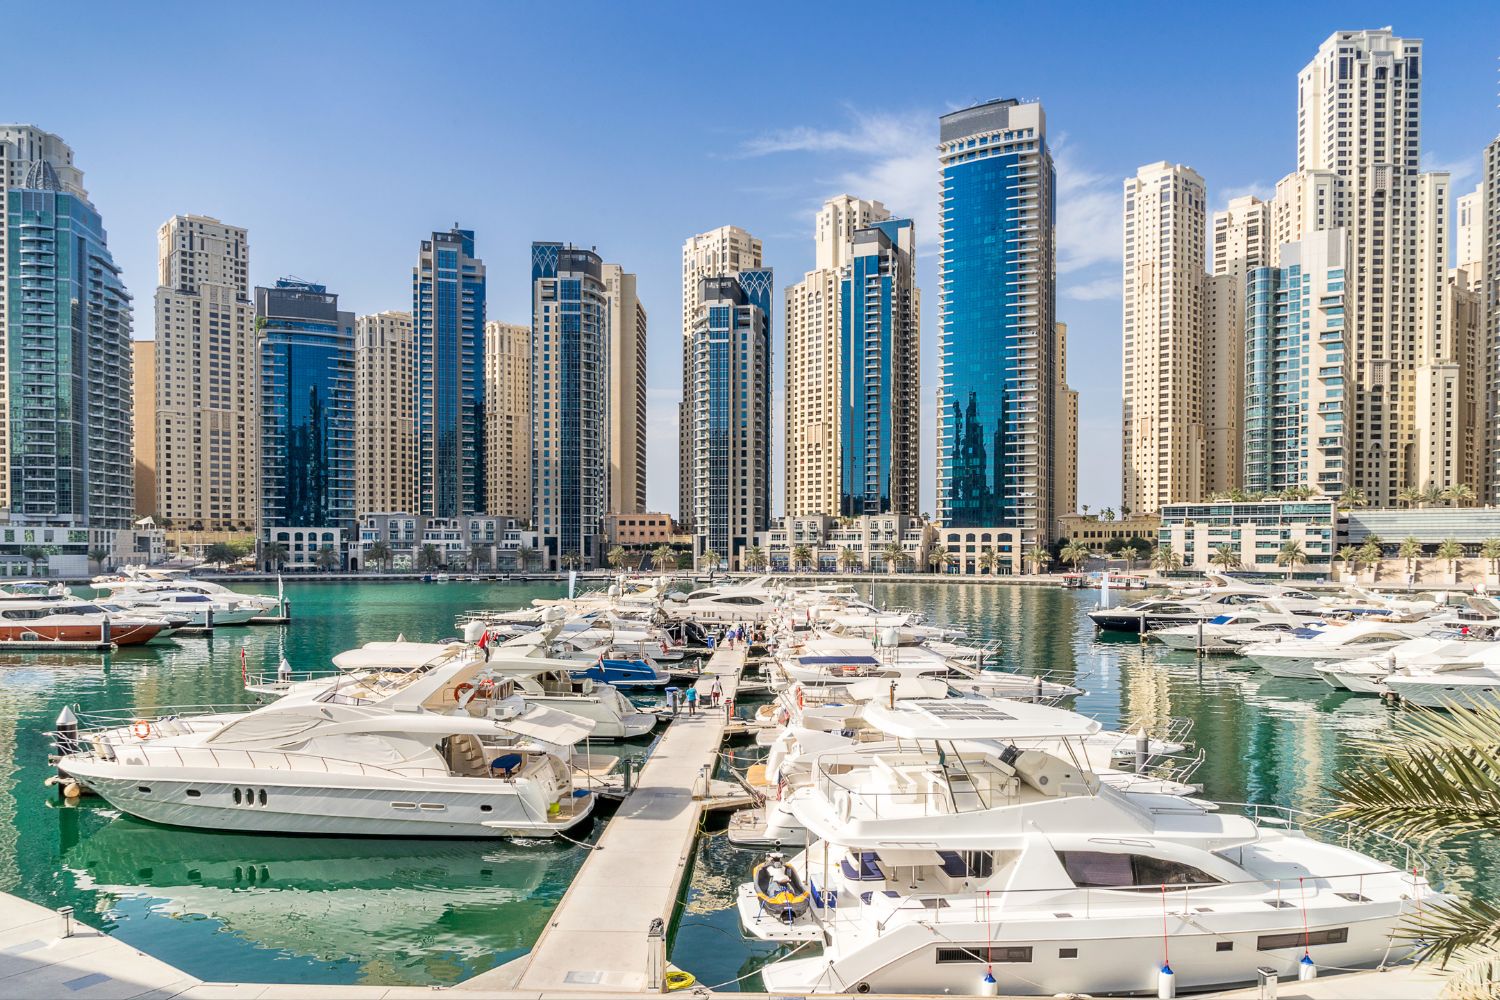 Visit Dubai Marina